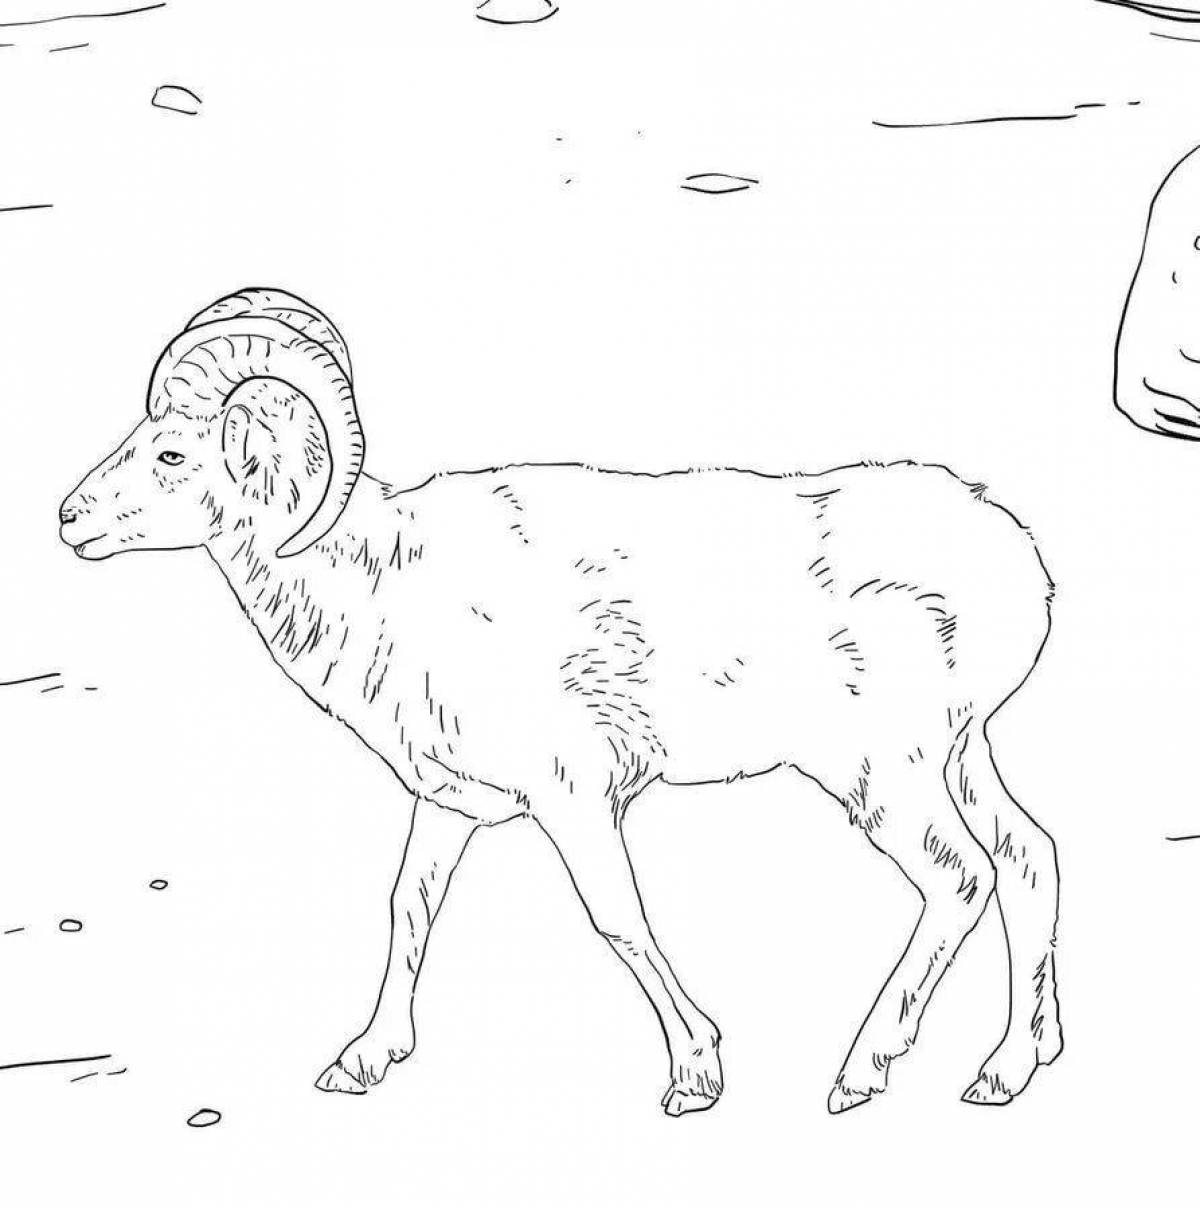 Shiny Altai mountain sheep coloring book